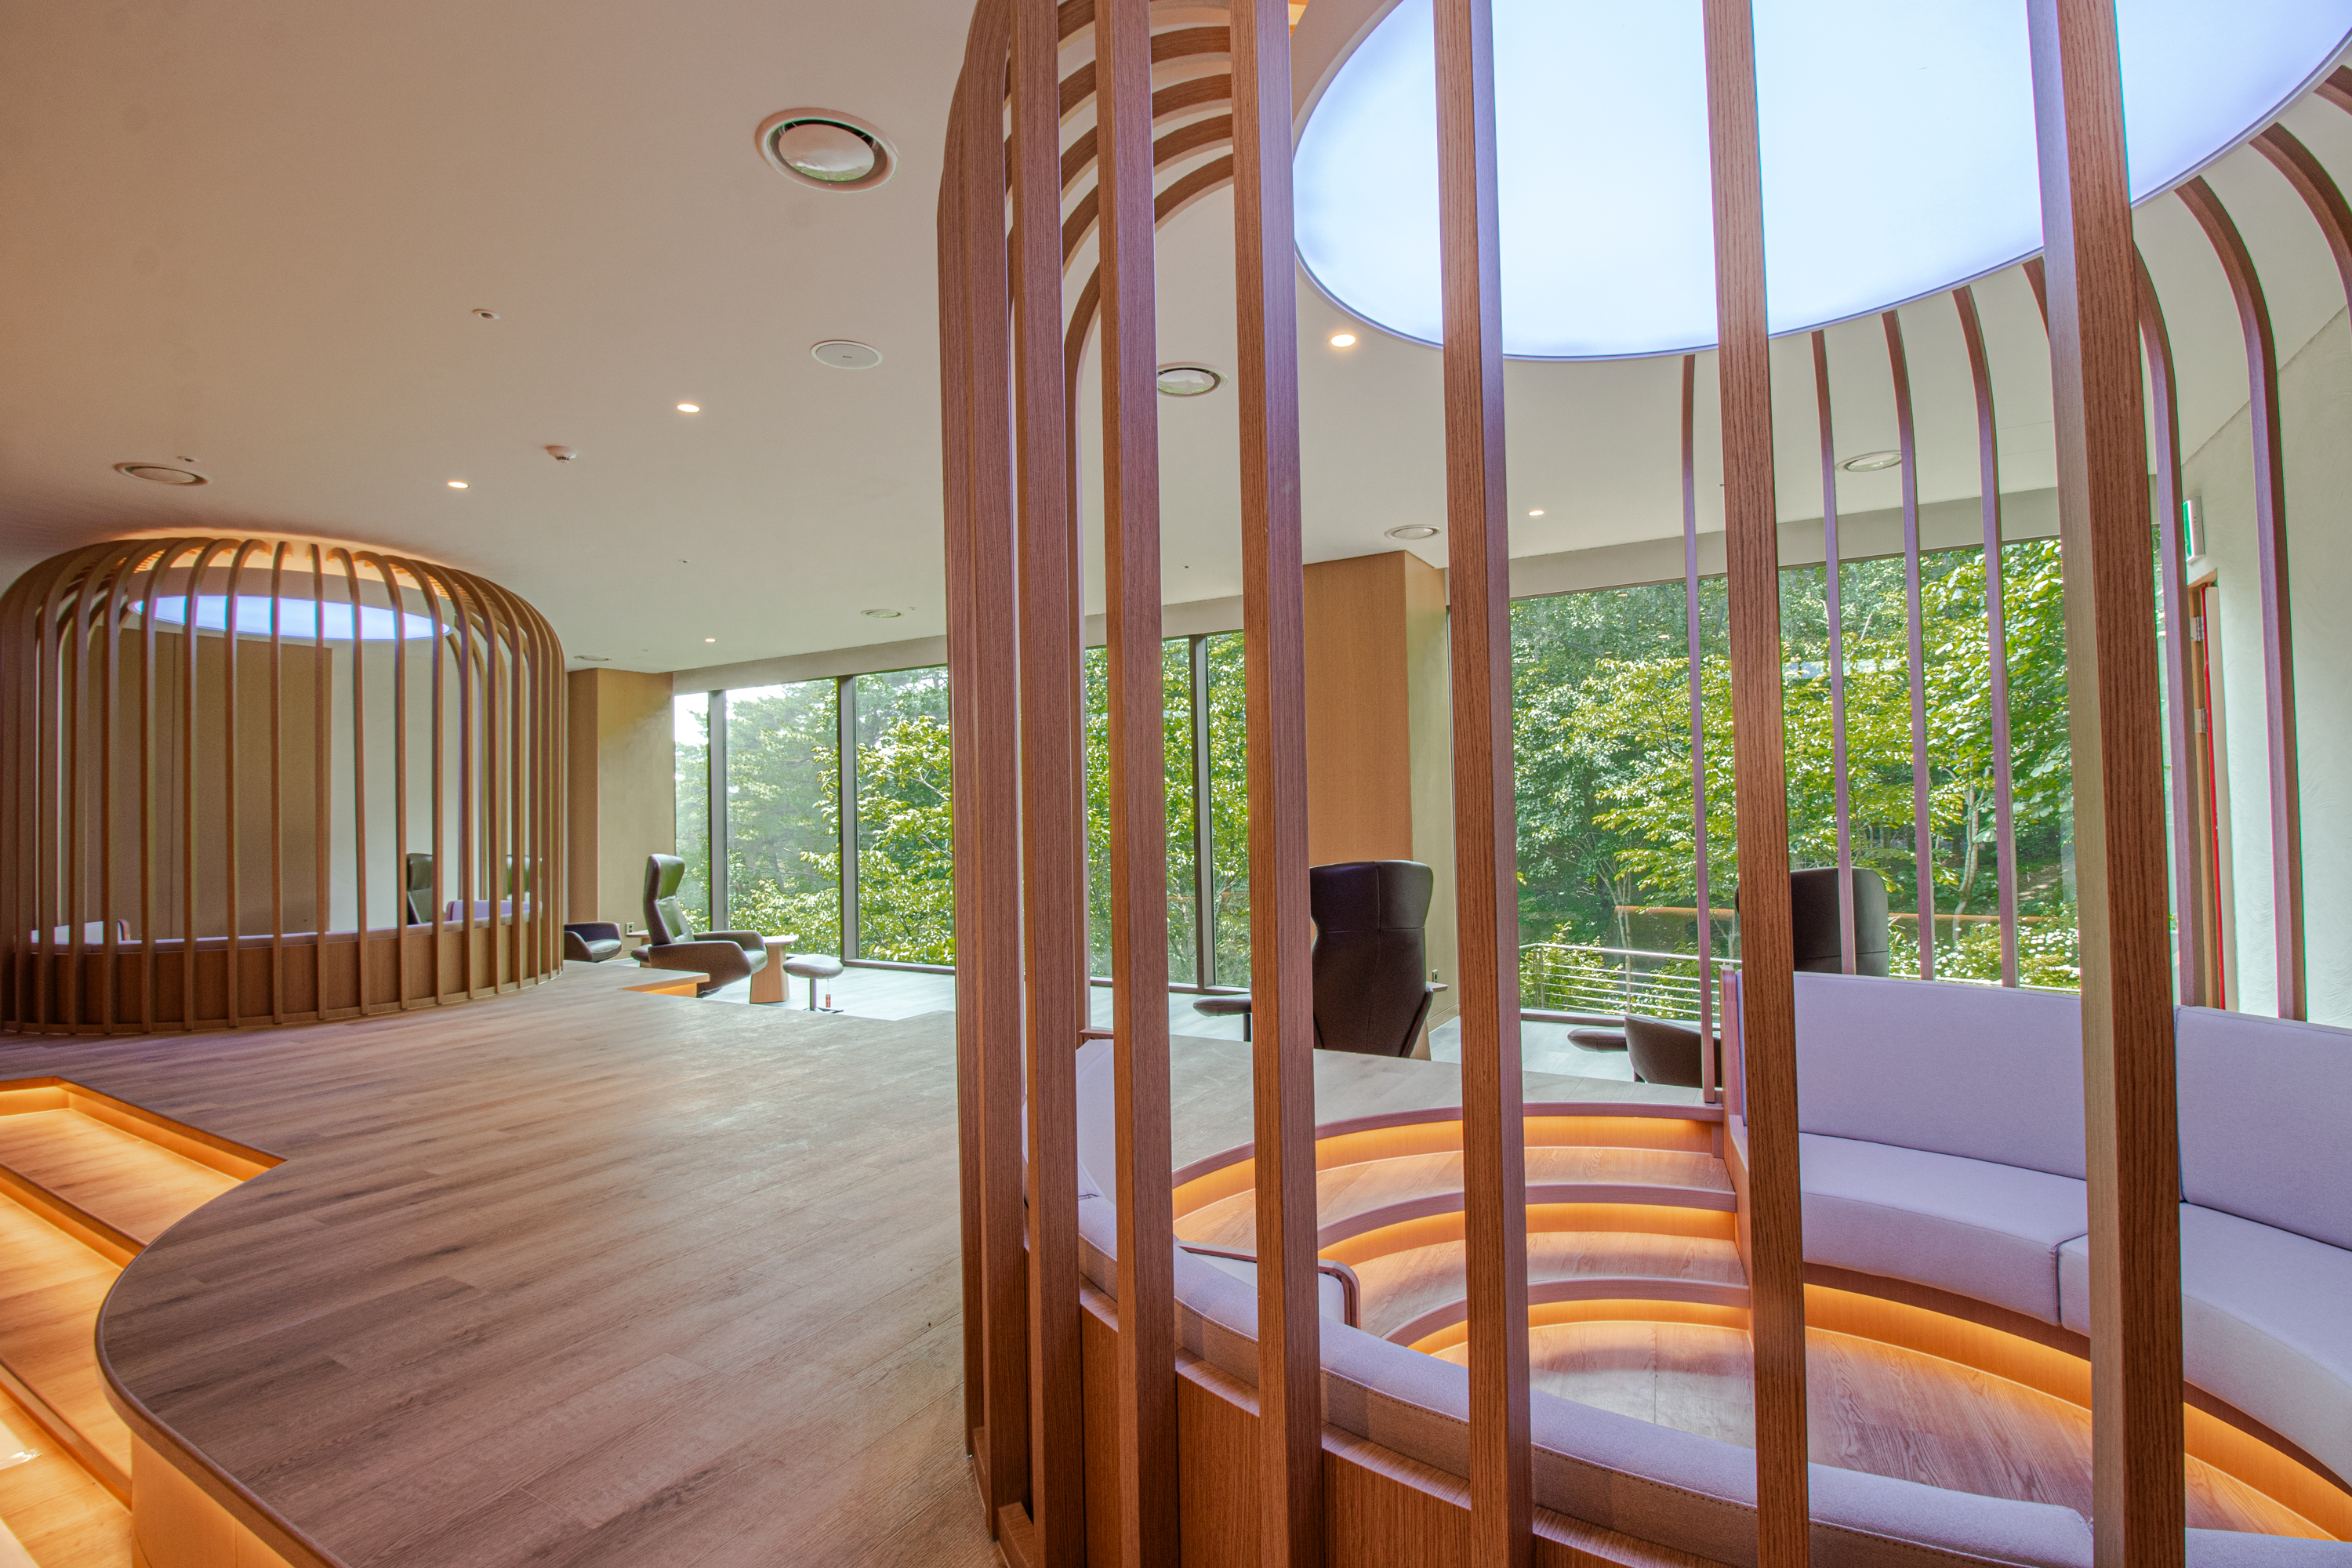 포레스트 리솜의 해브나인 스파 찜질방 ‘온미당’은 실내외 자연을 적극 끌어들인 디자인으로 완벽한 휴식시설 갖추고 있다.